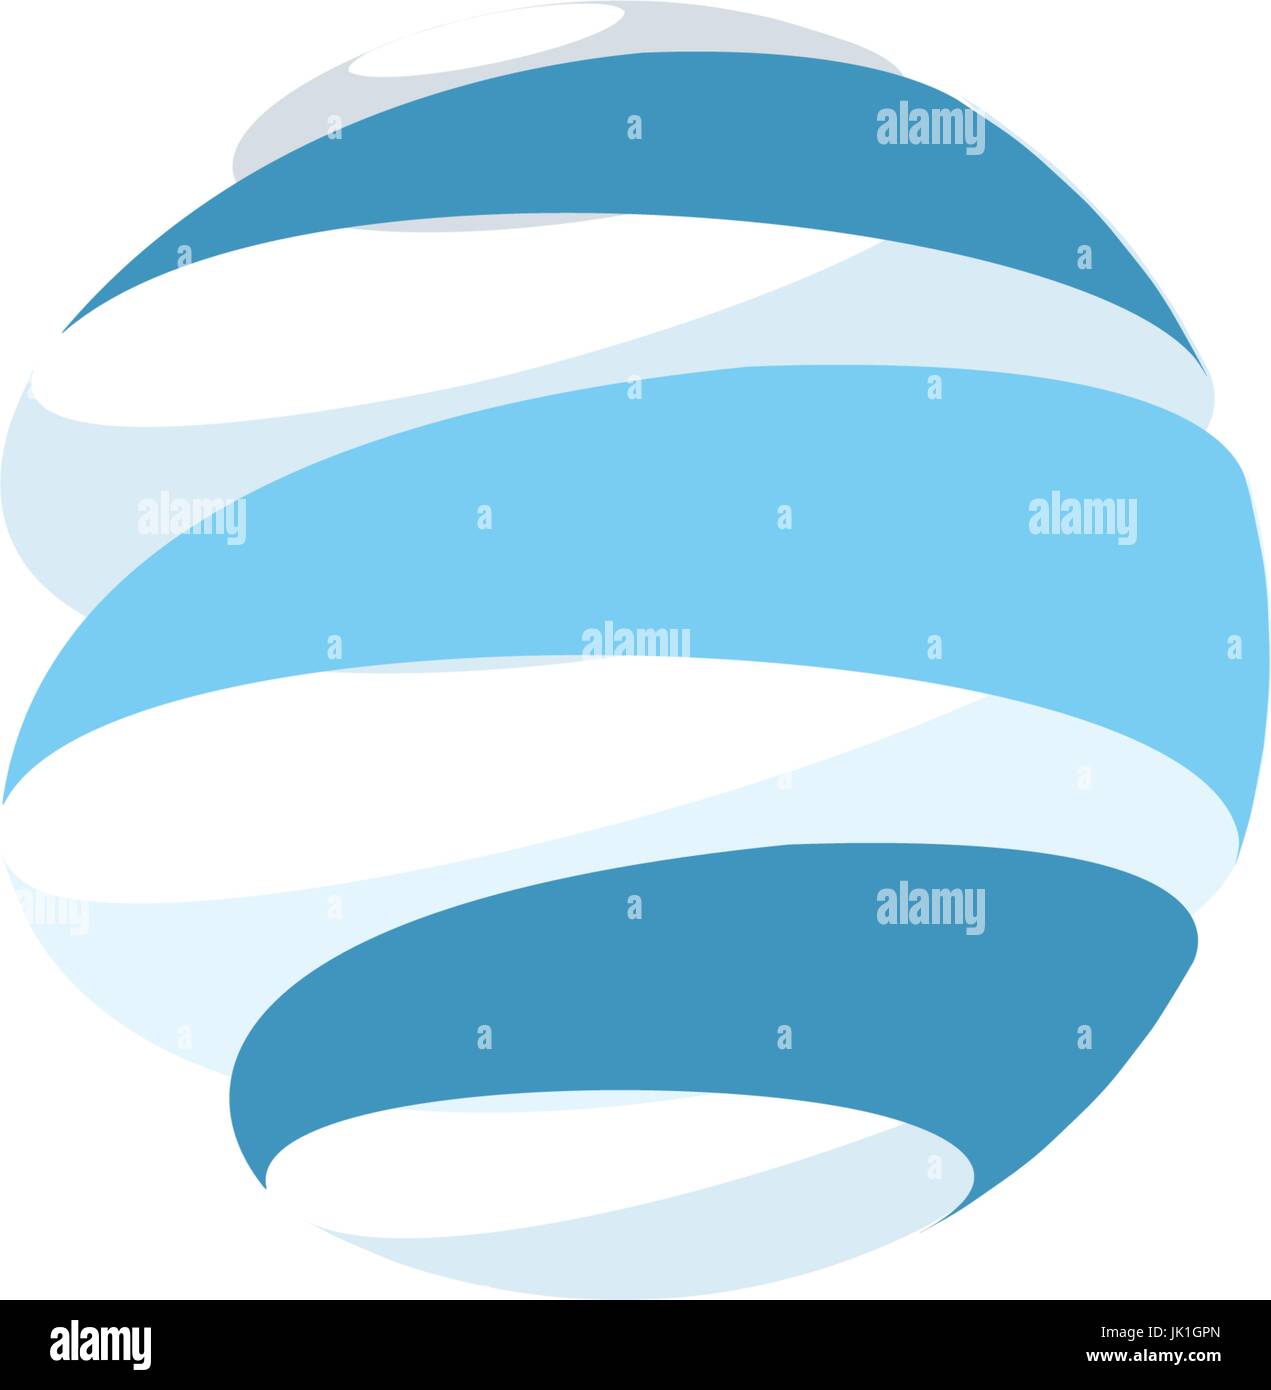 Abstract Blue Planet mondial dépouillé vector logos modèle. La rotation des bandes bleu, planète en mouvement circulaire autour de son axe. Universal divers logo isolés. Illustration de Vecteur